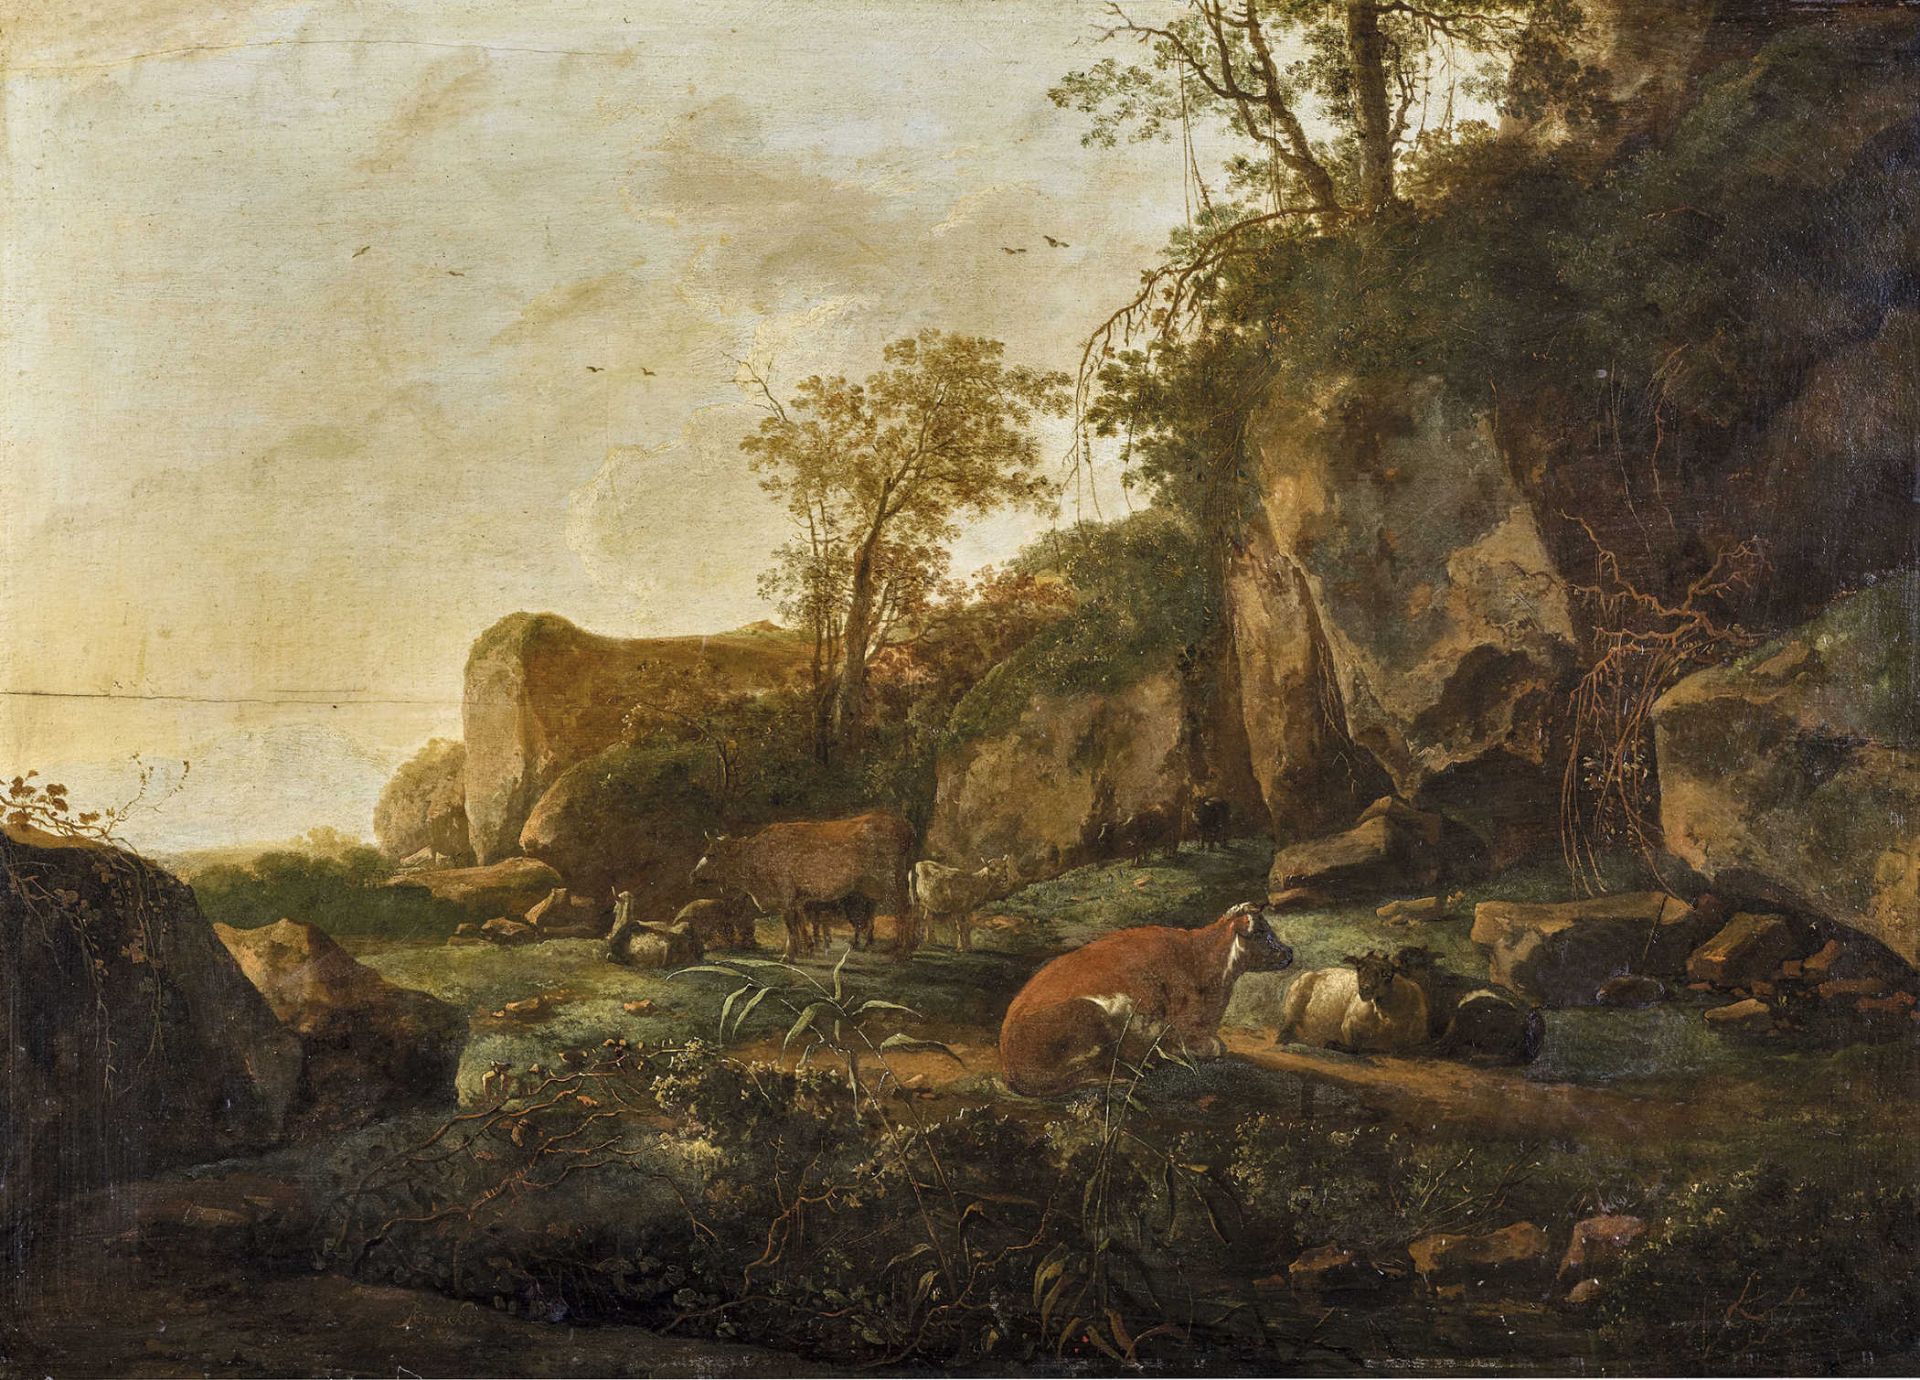 PIJNACKER, ADAMSchiedam 1620/22 - 1673 AmsterdamIdyllische Landschaft mit Viehherde.Öl auf Holz,sig.